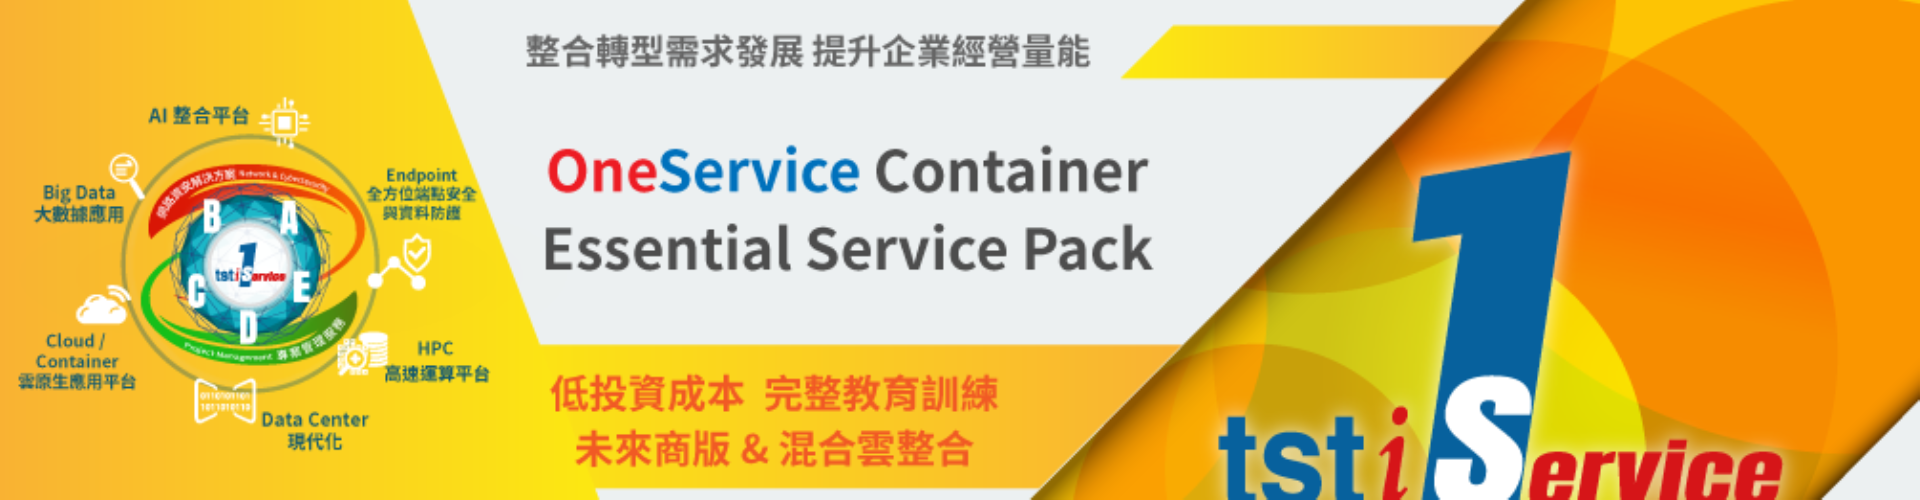 大世科-EDM OneService Container Essential Service Pack